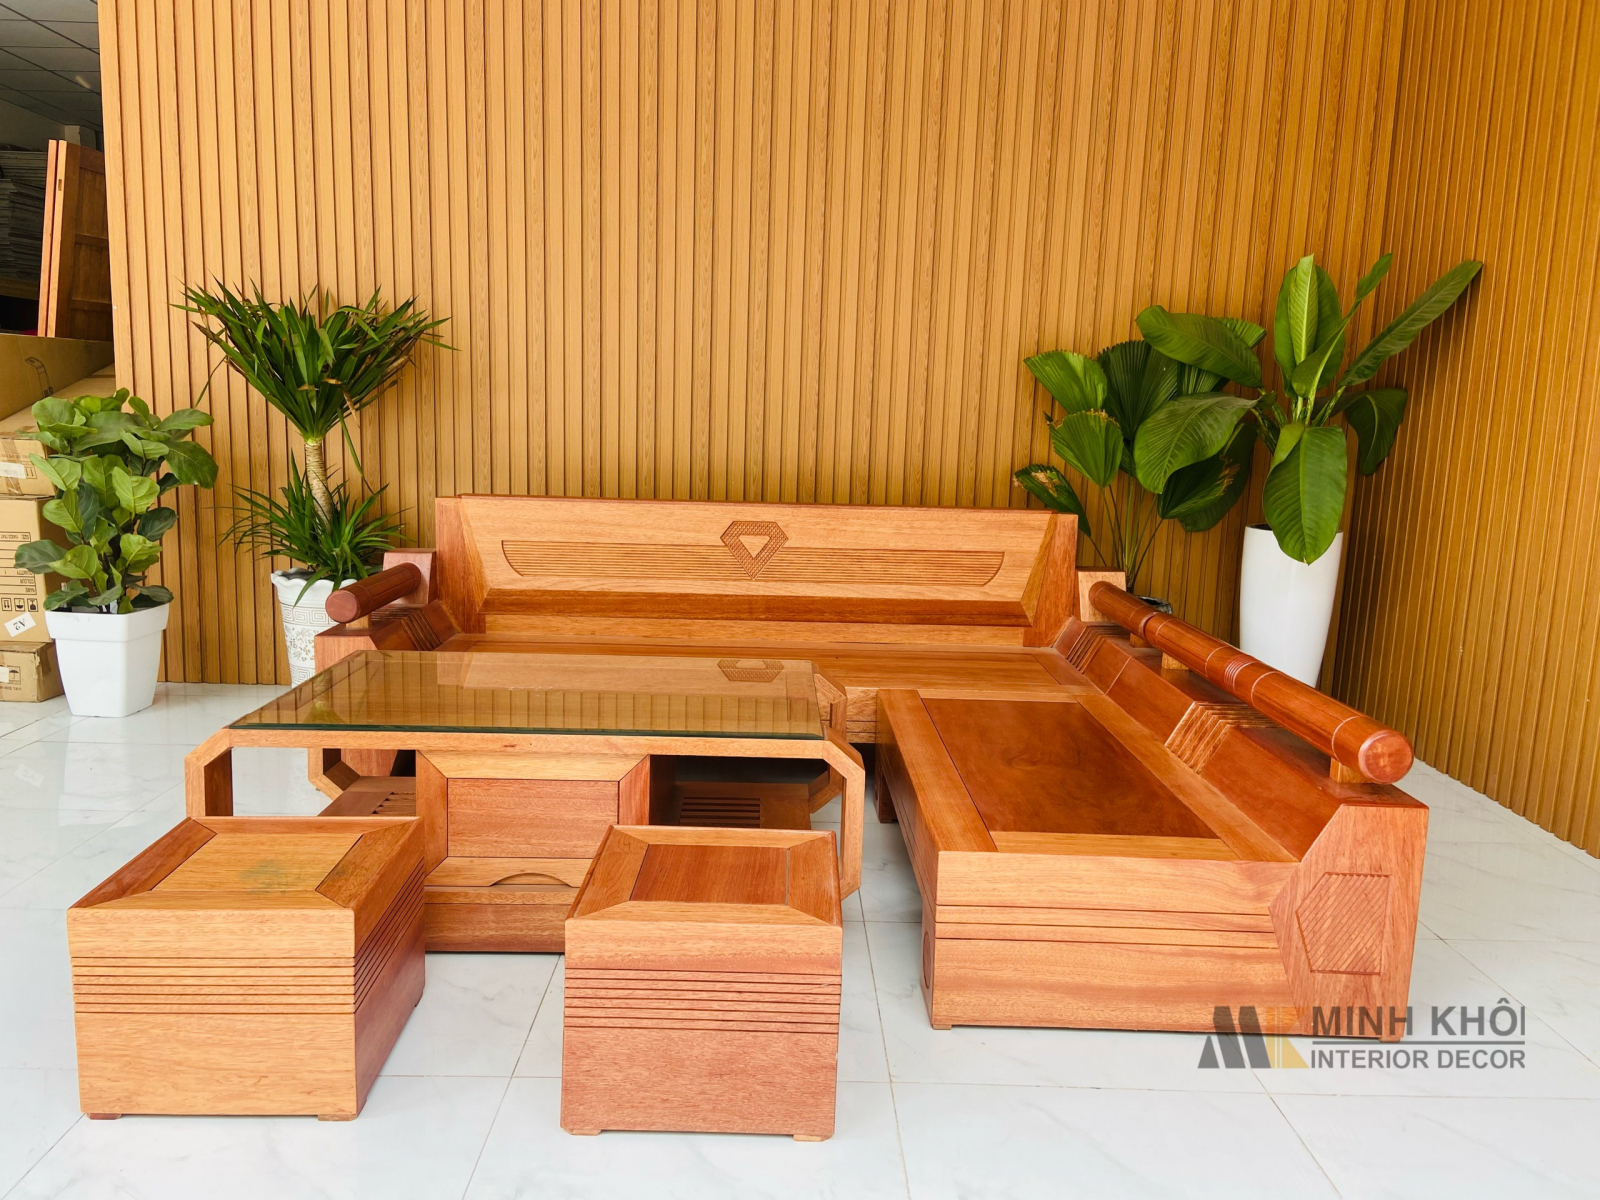 Trường kỷ gỗ gụ mật bộ 3 món (Anh Quang, Nam Định)